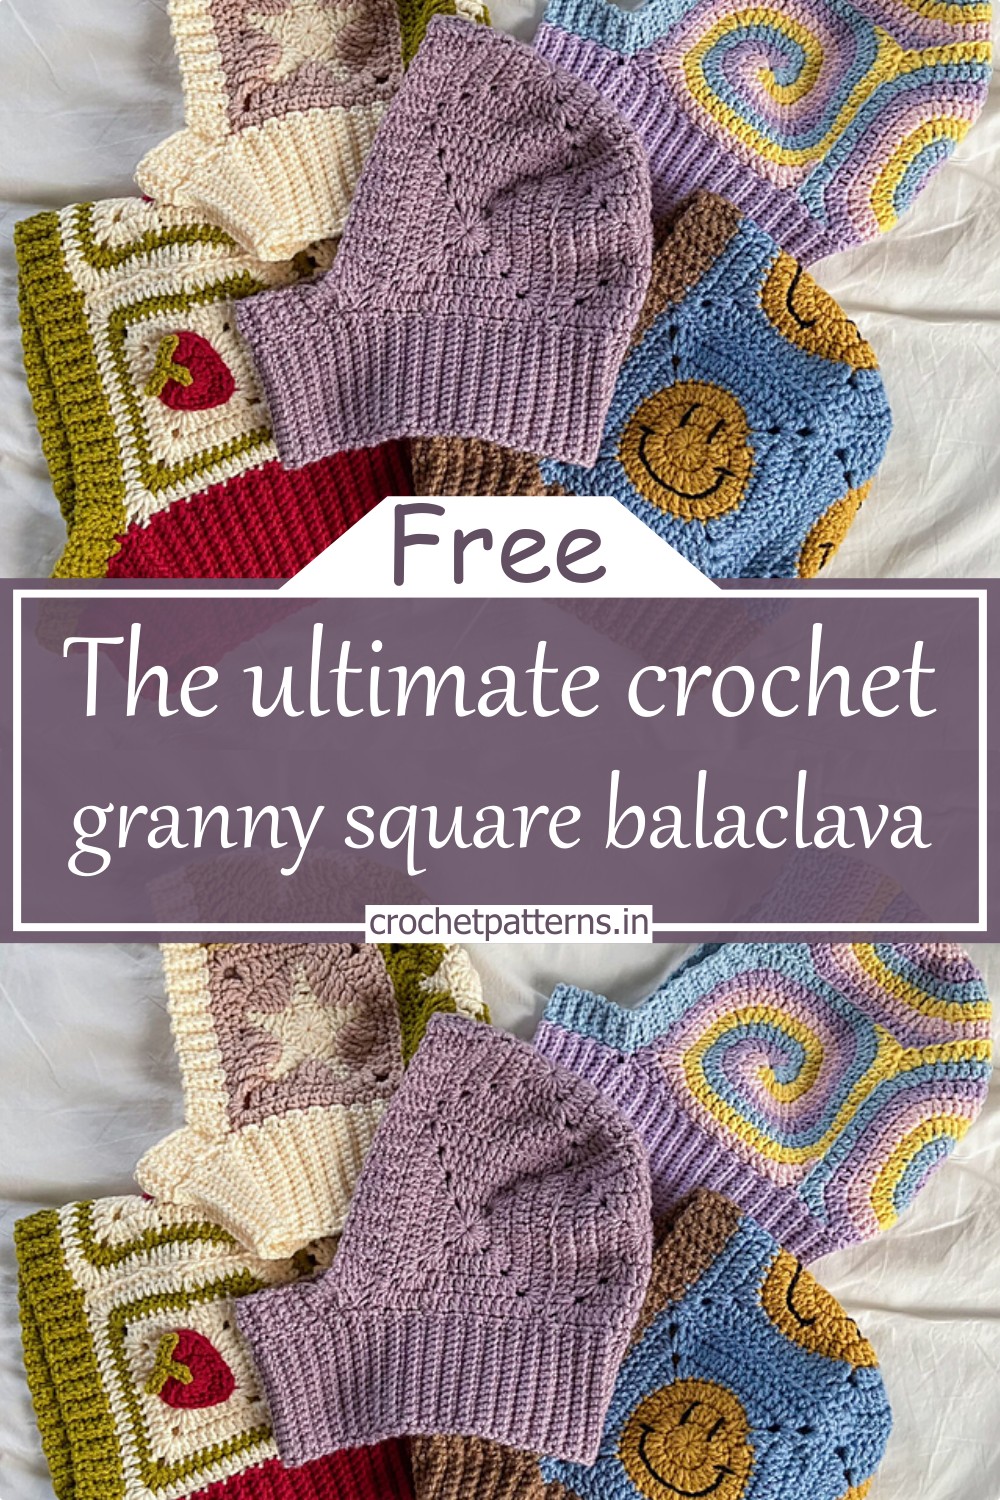 The ultimate crochet granny square balaclava